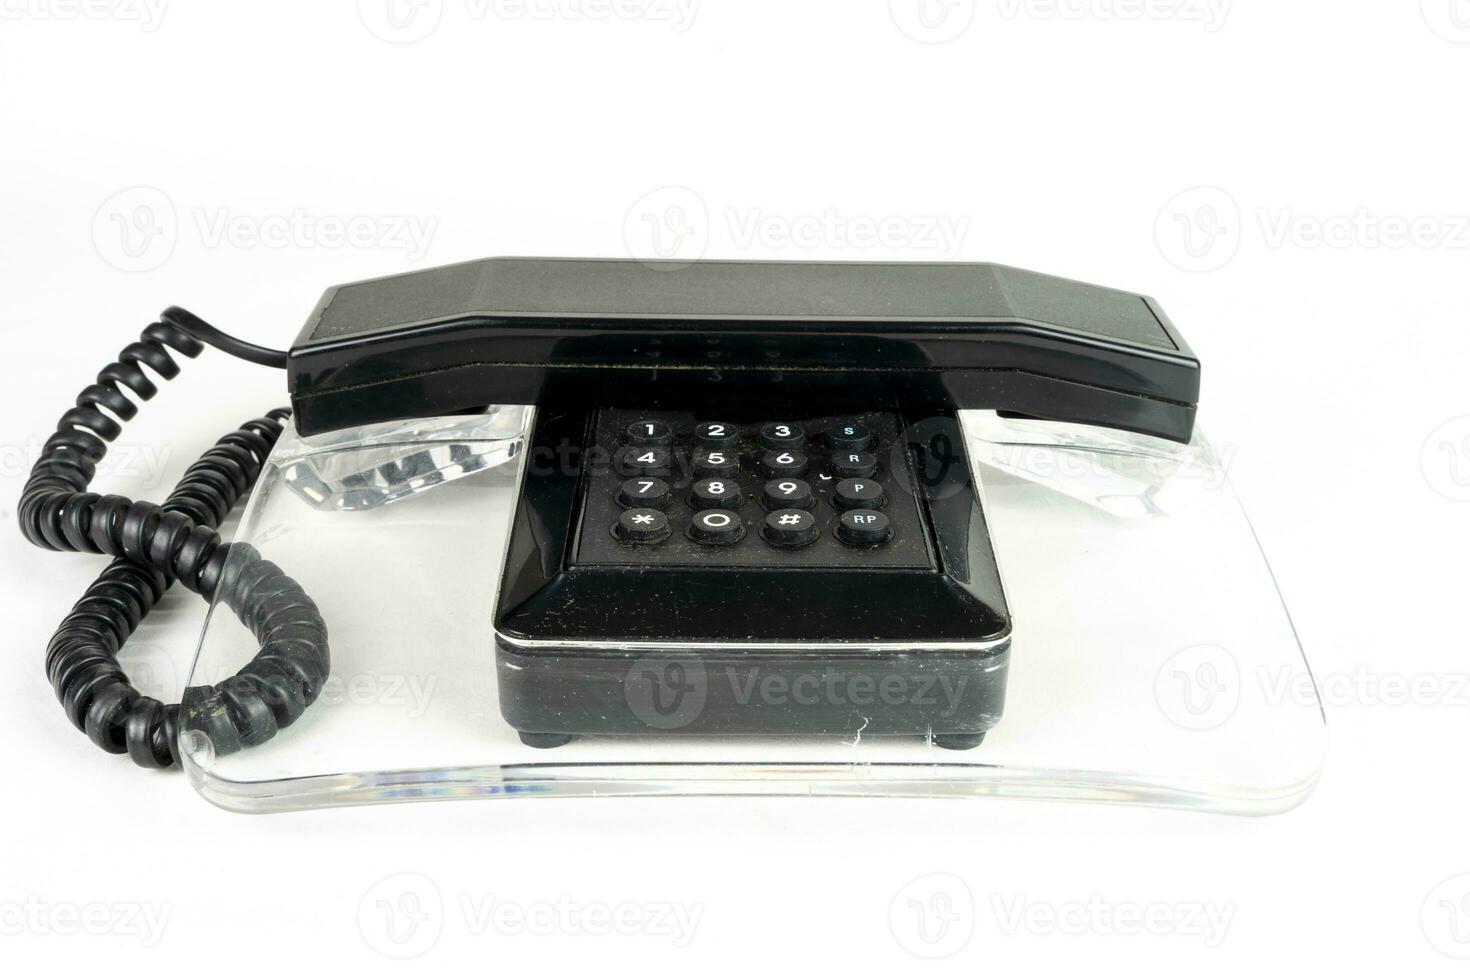 schwarz und transparent Jahrgang Telefon Über ein Weiß Hintergrund foto